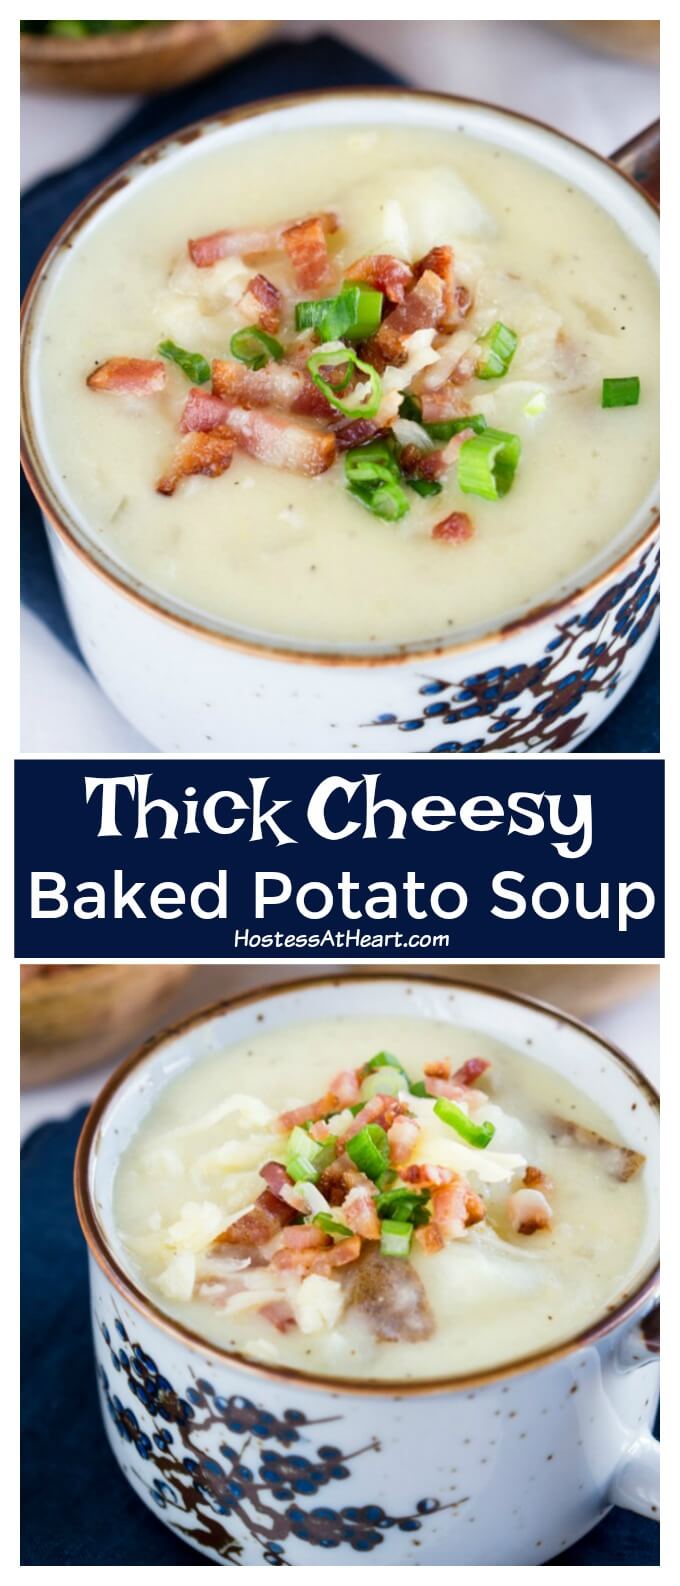 Thick Cheesy Baked Potato Soup Recipe - Hostess At Heart